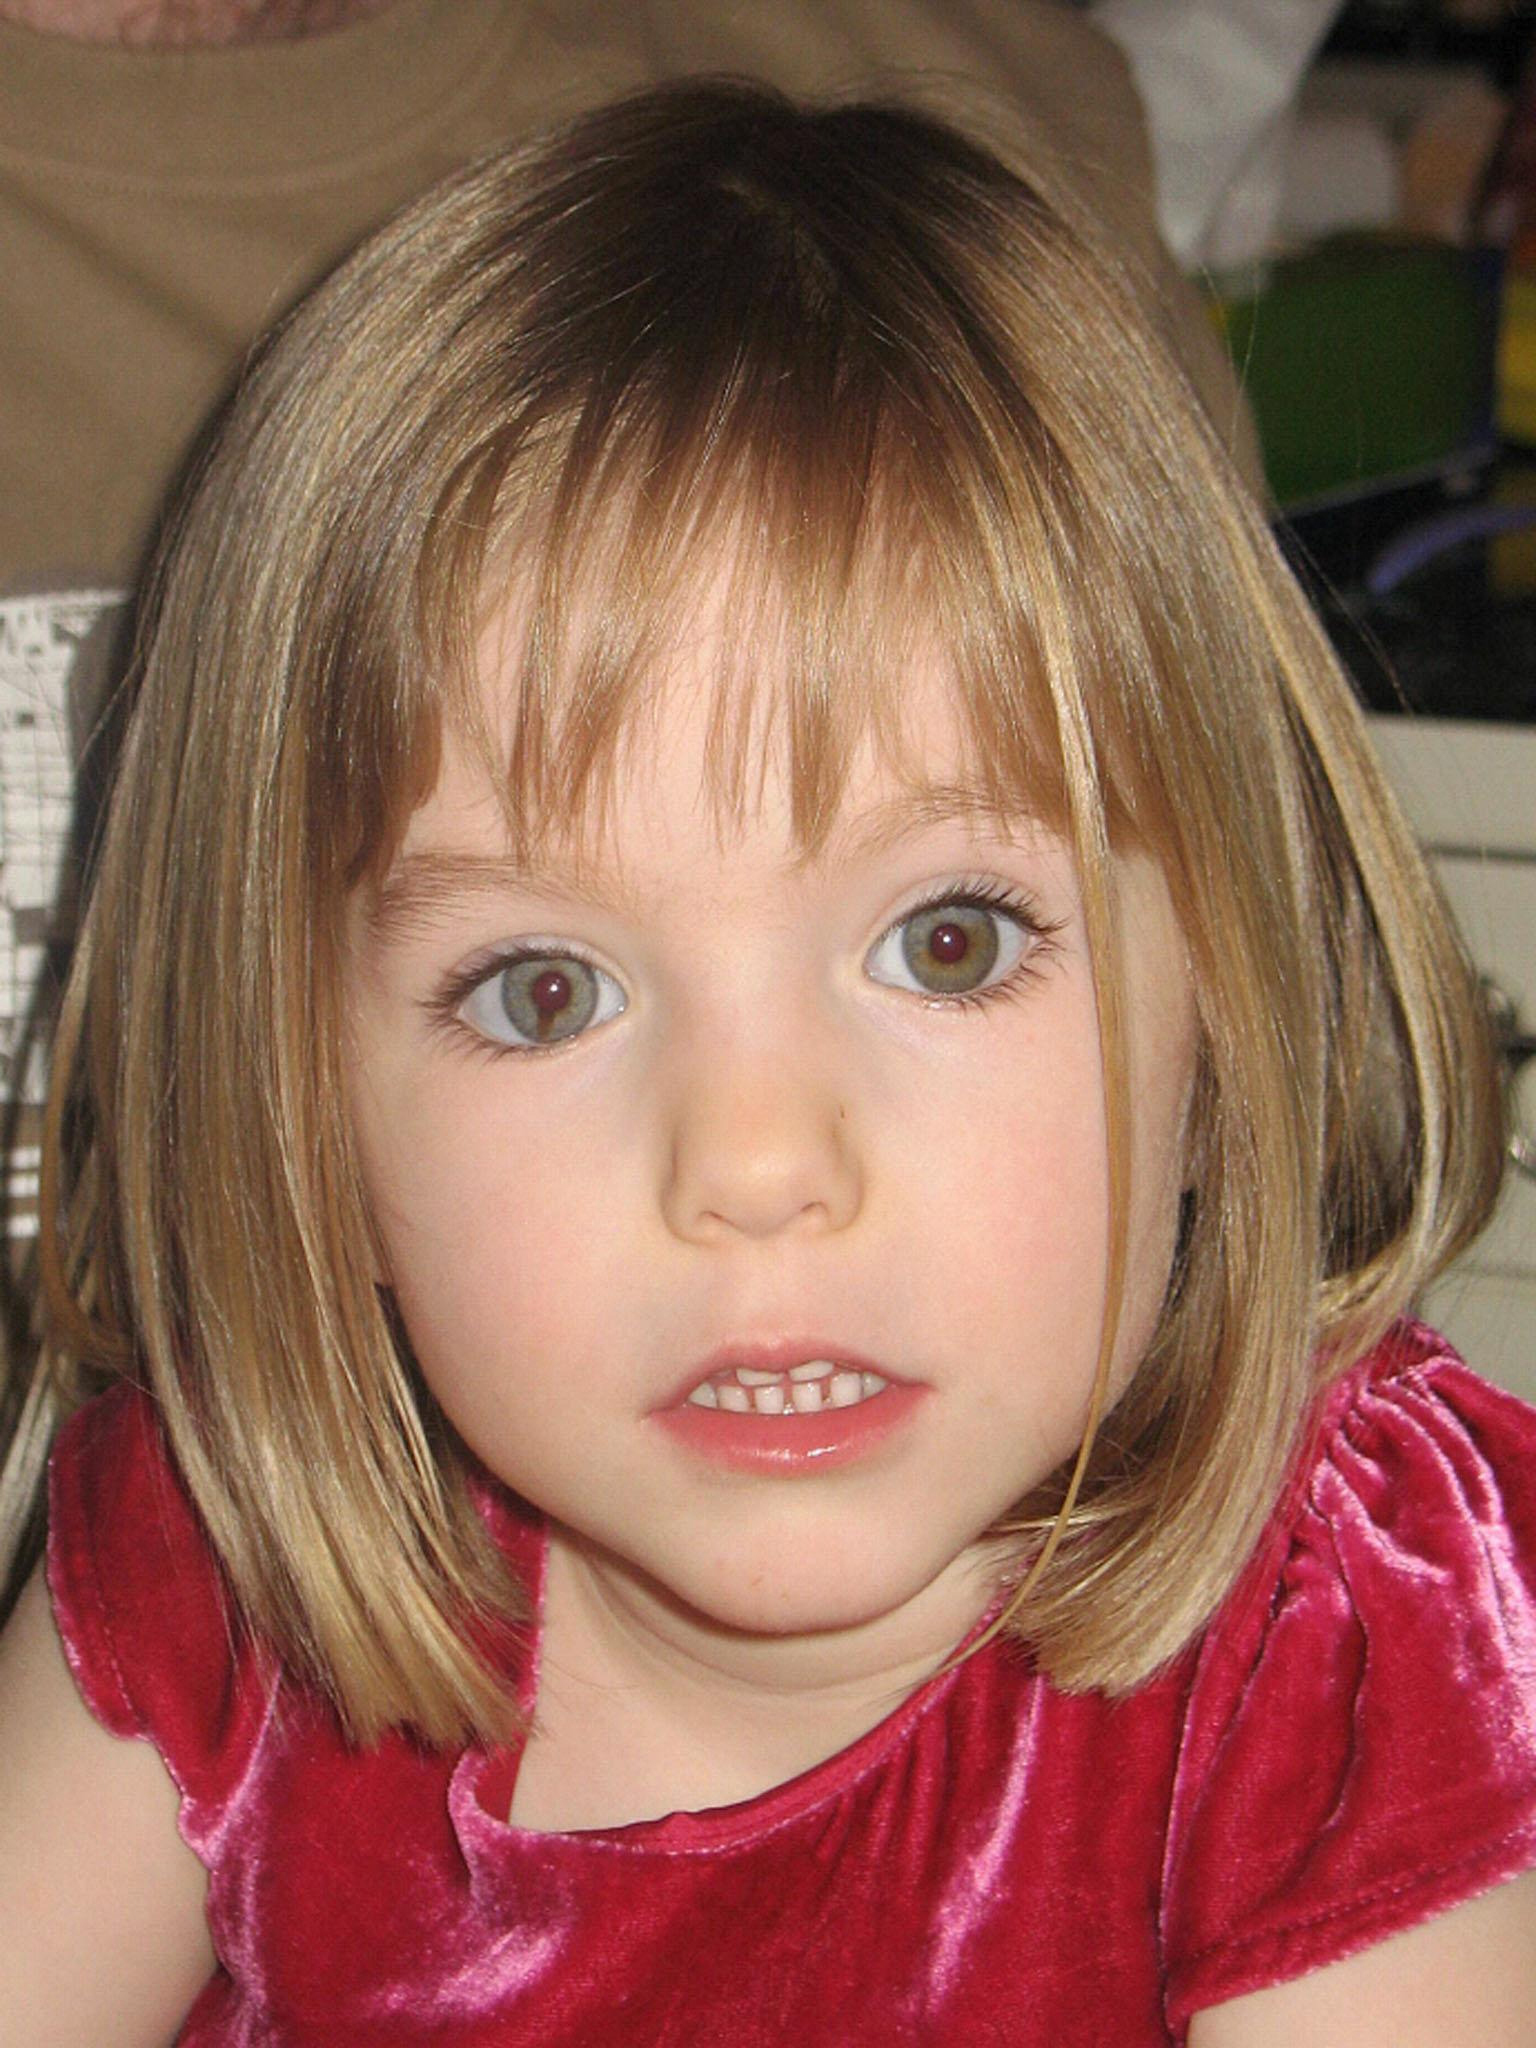 Madeleine wurde am 3. Mai 2007 vermisst, als ihre Familie in Praia da Luz an der Algarve in Portugal Urlaub machte